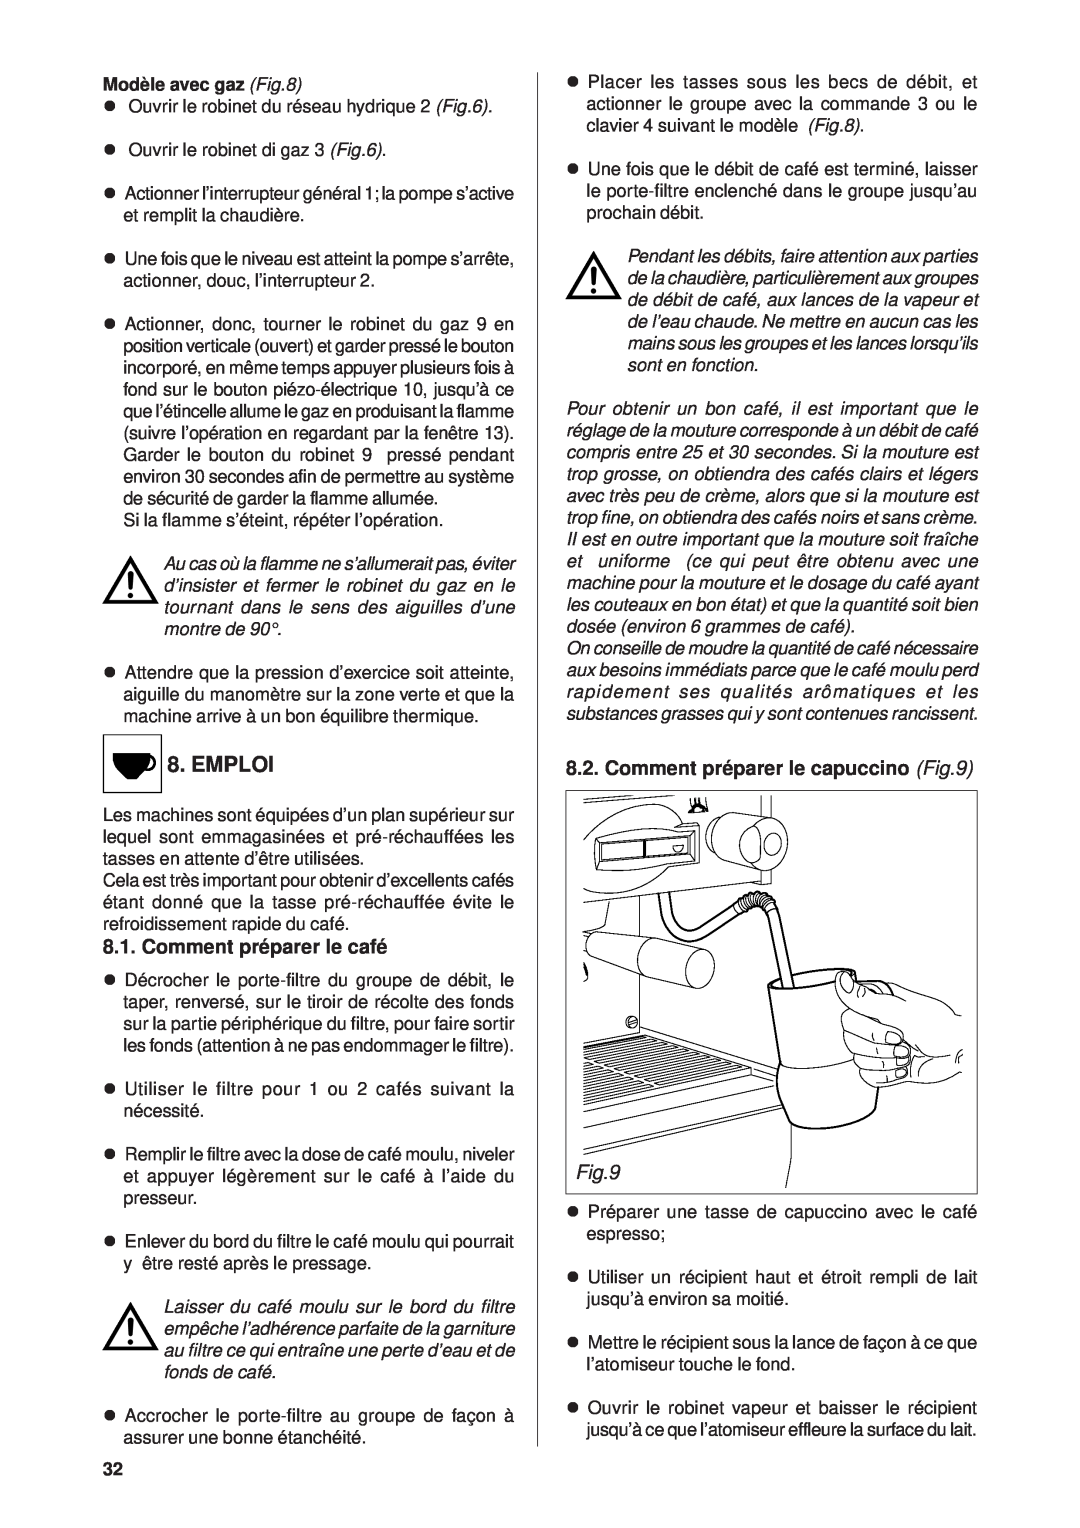 Rancilio Millennium manual Emploi, Comment préparer le café, Comment préparer le capuccino 